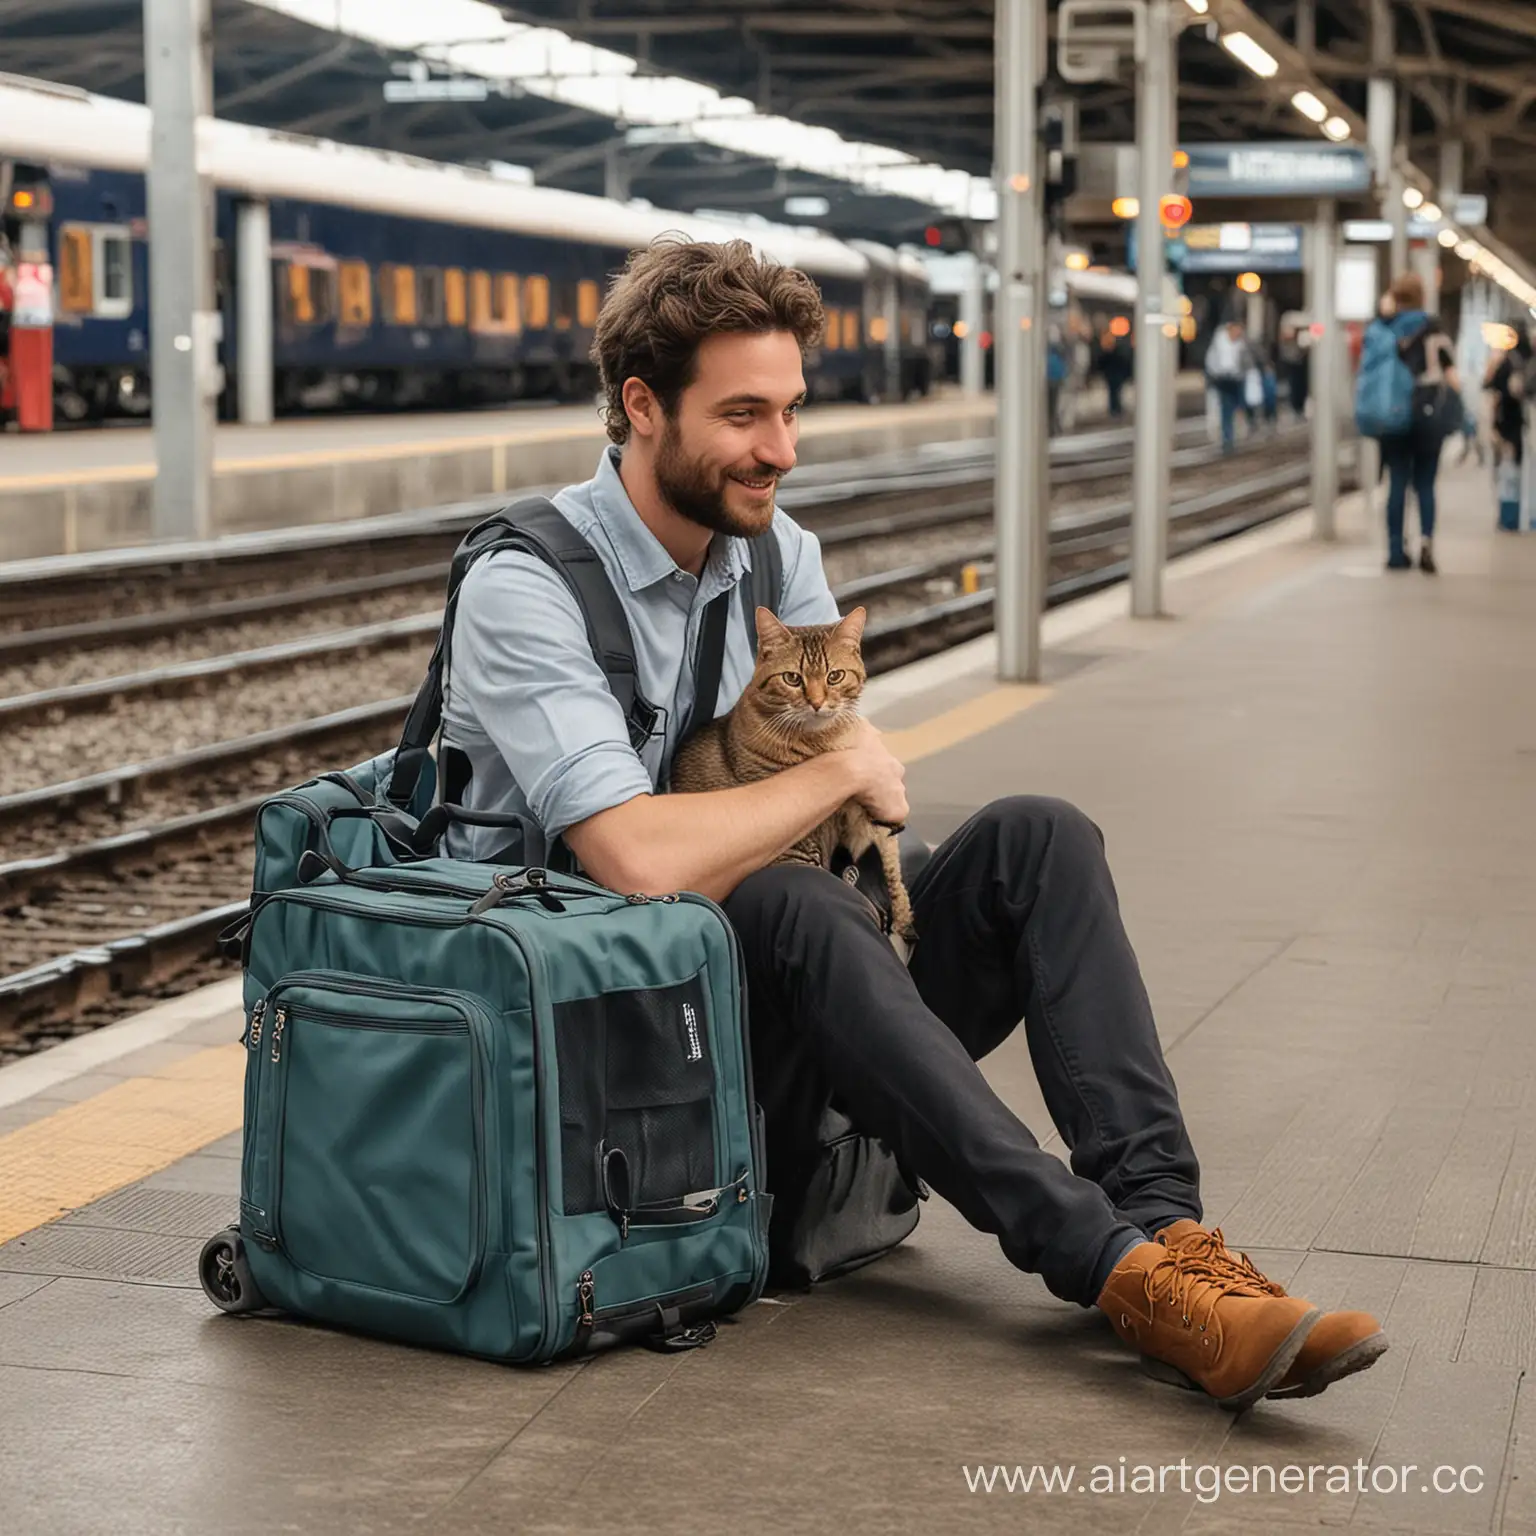 Парень и кот в переноске сидят на железнодорожном вокзале